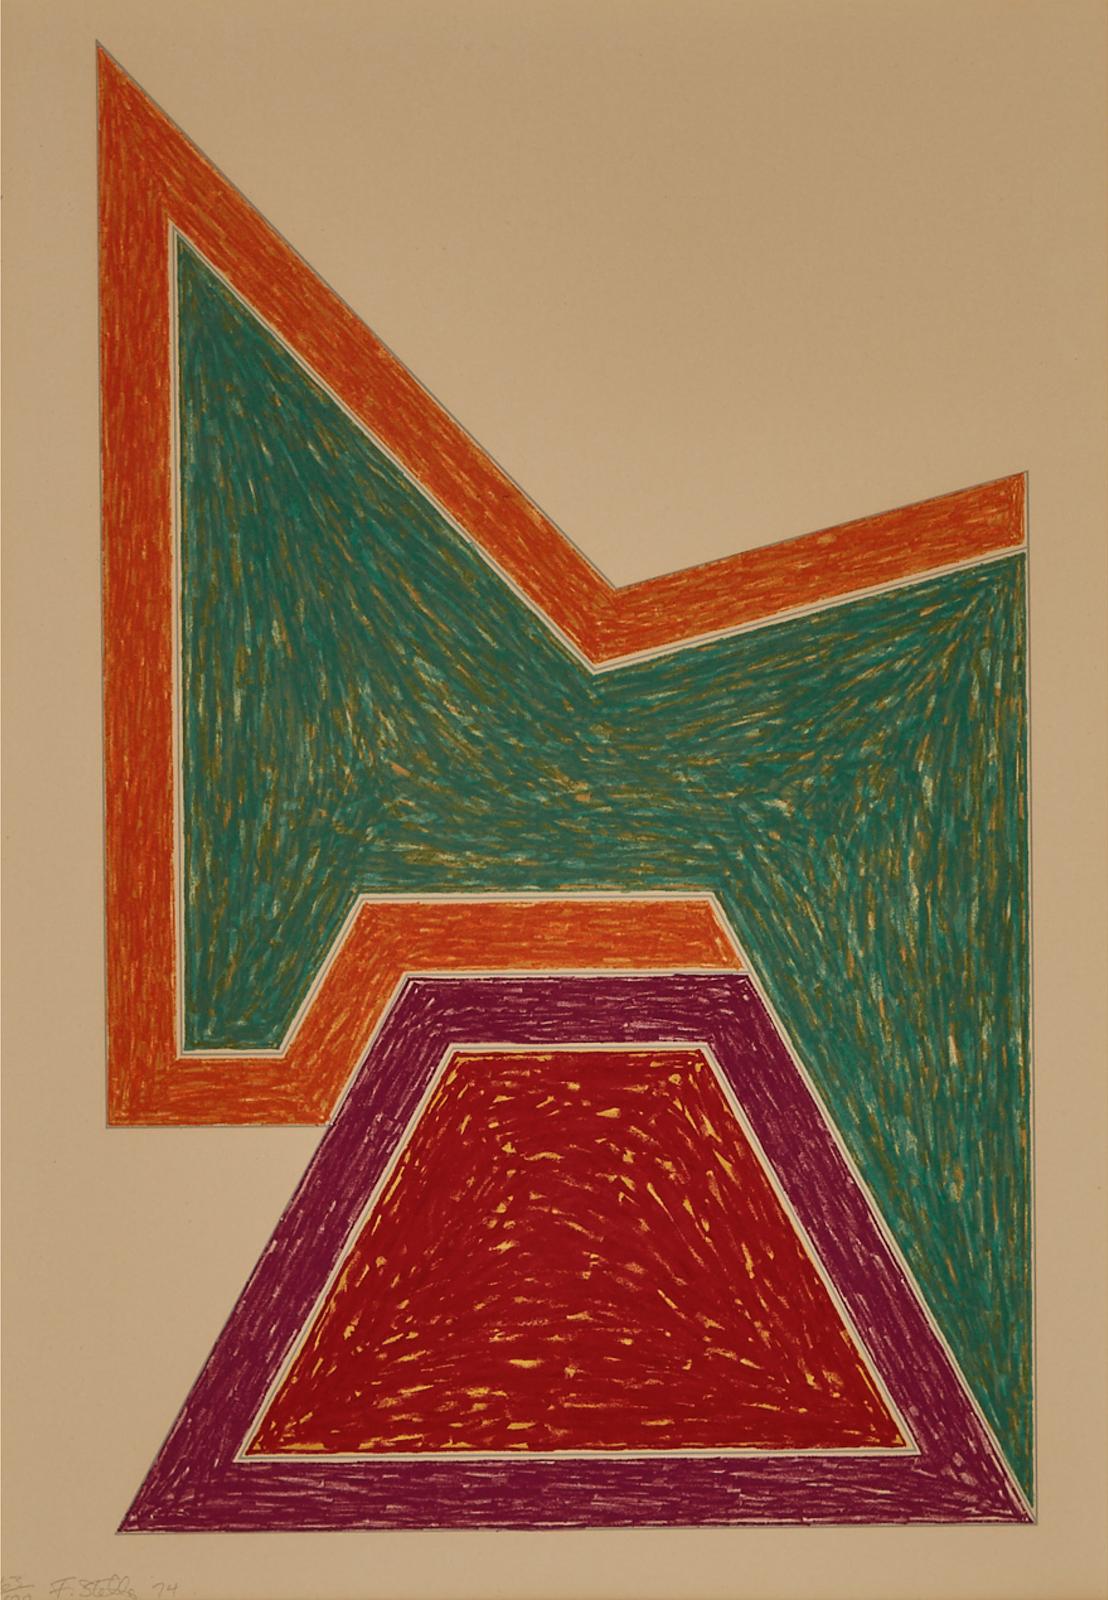 Frank Stella (1936) - Wolfeboro (From Eccentric Polygons), 1974 [gemini G.E.L., 548; Axsom, 98]